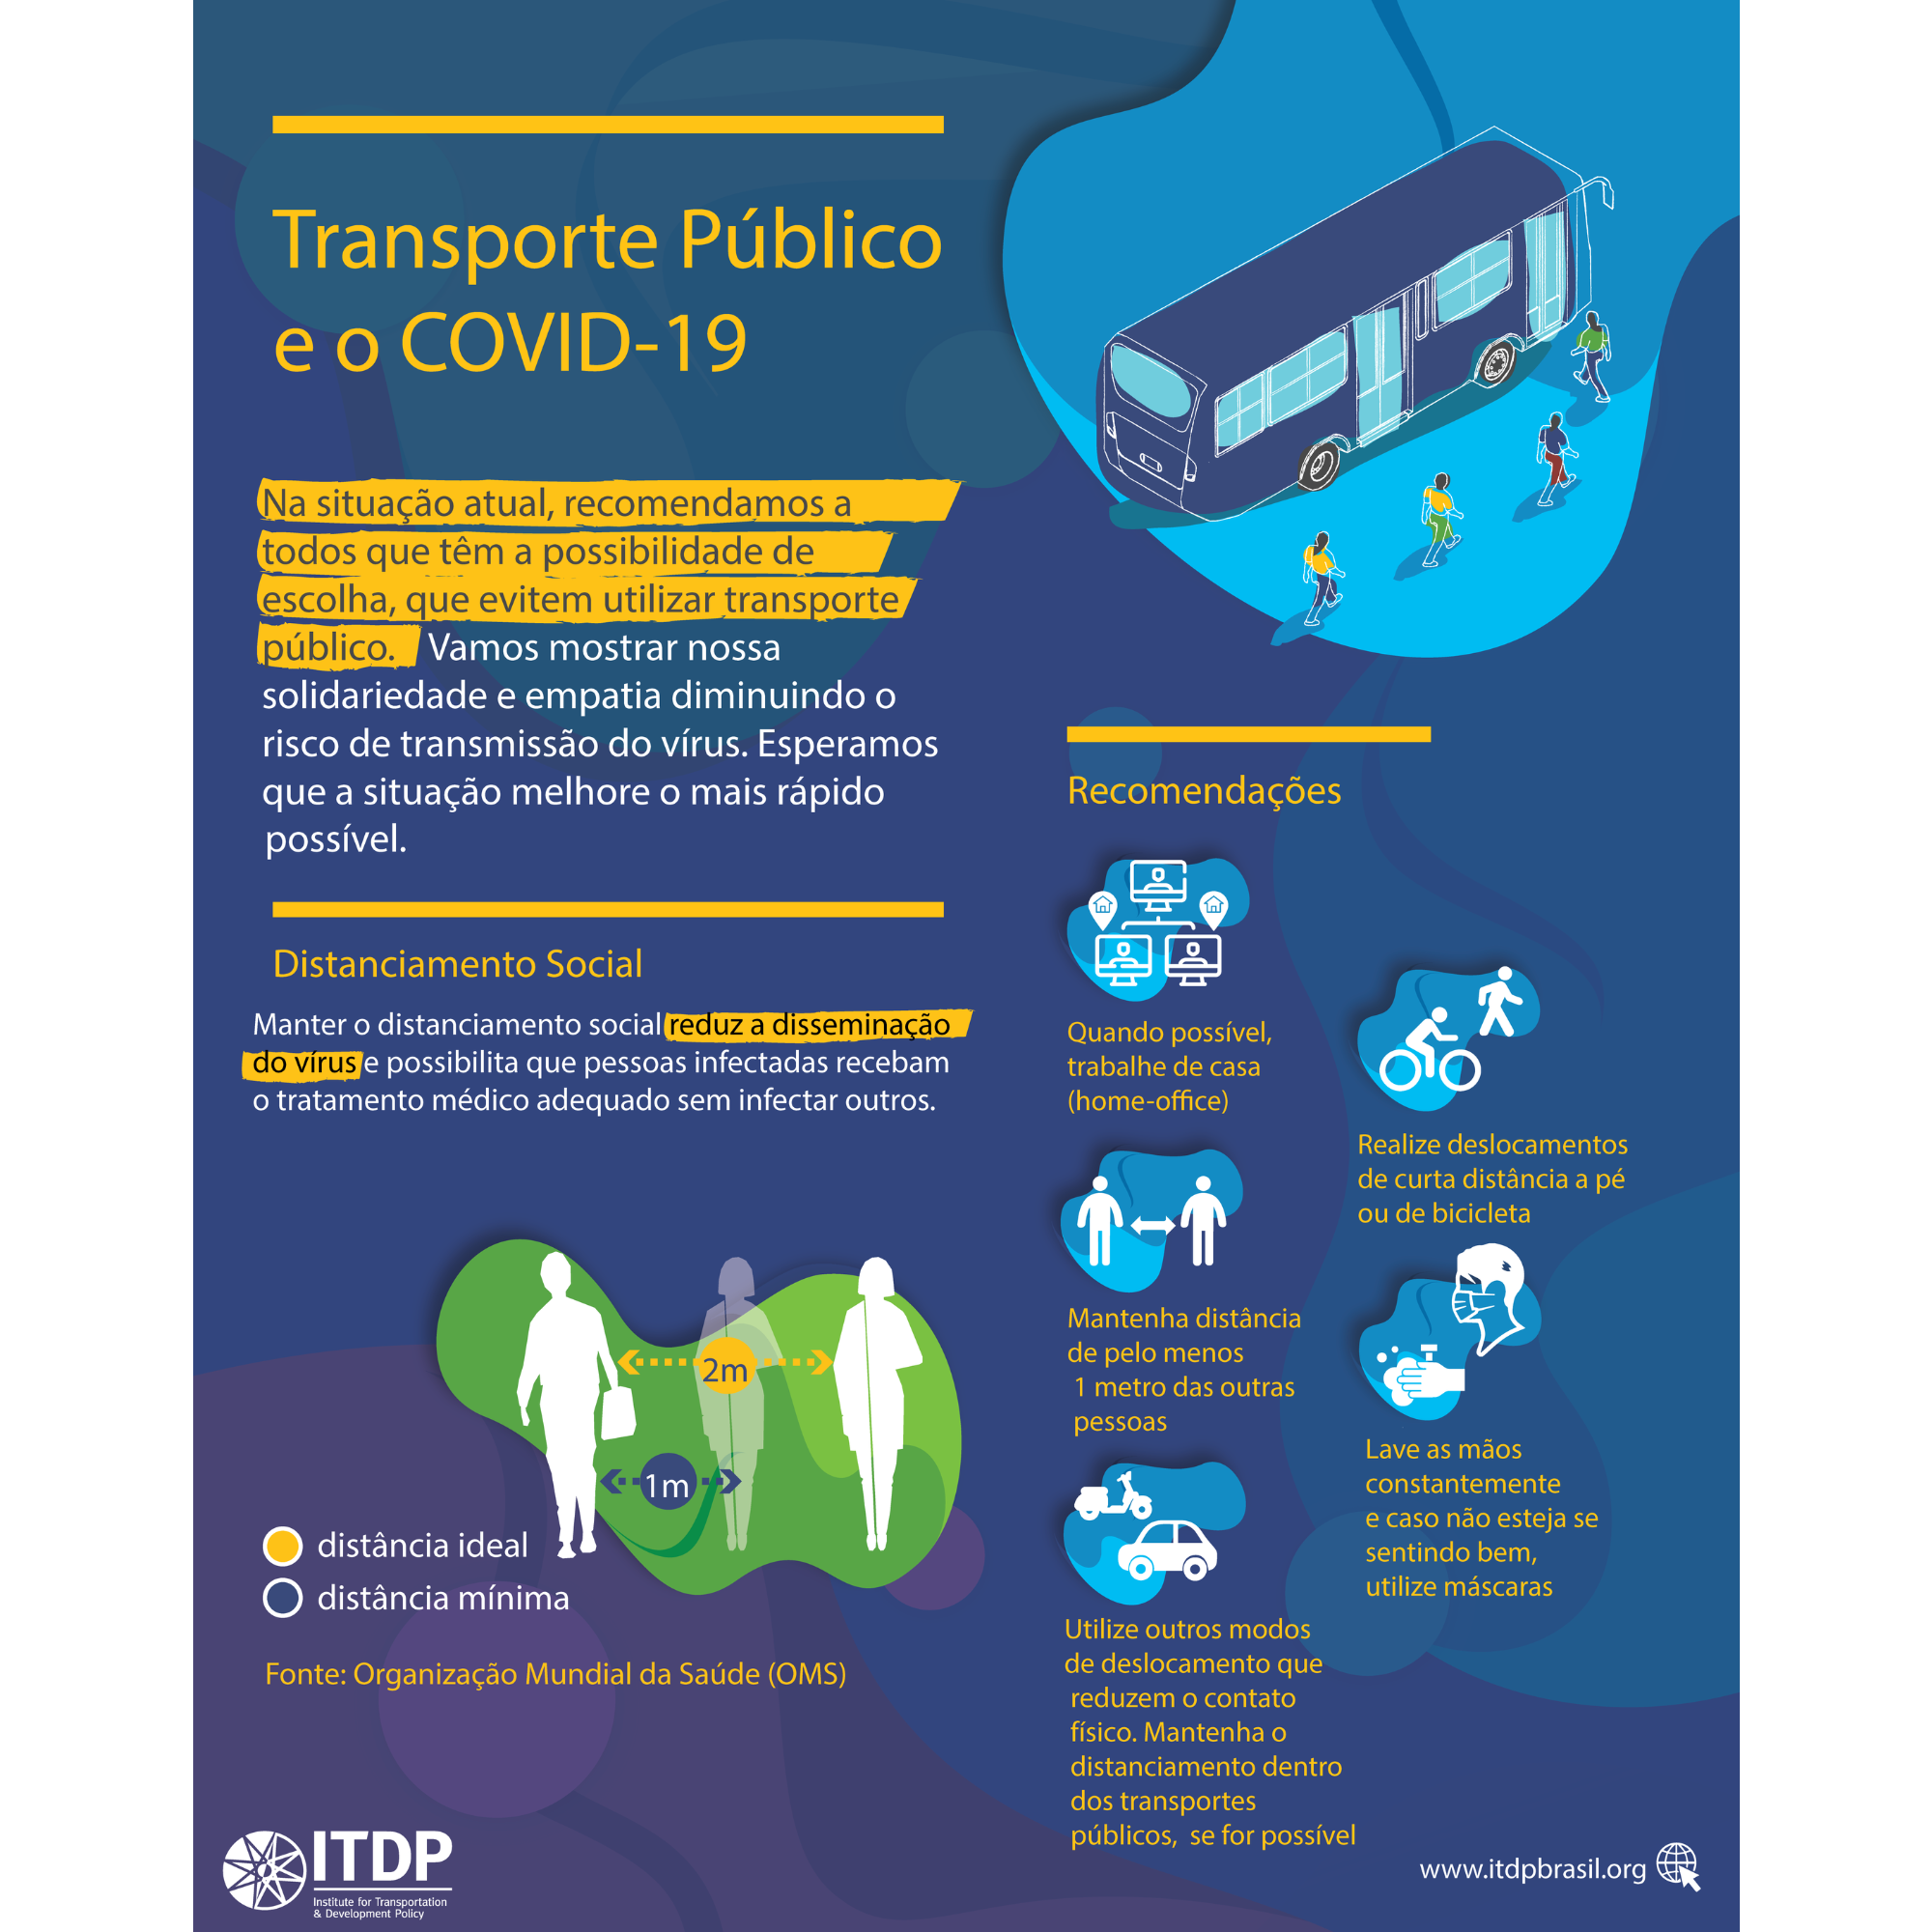 Transporte Público e a COVID-19